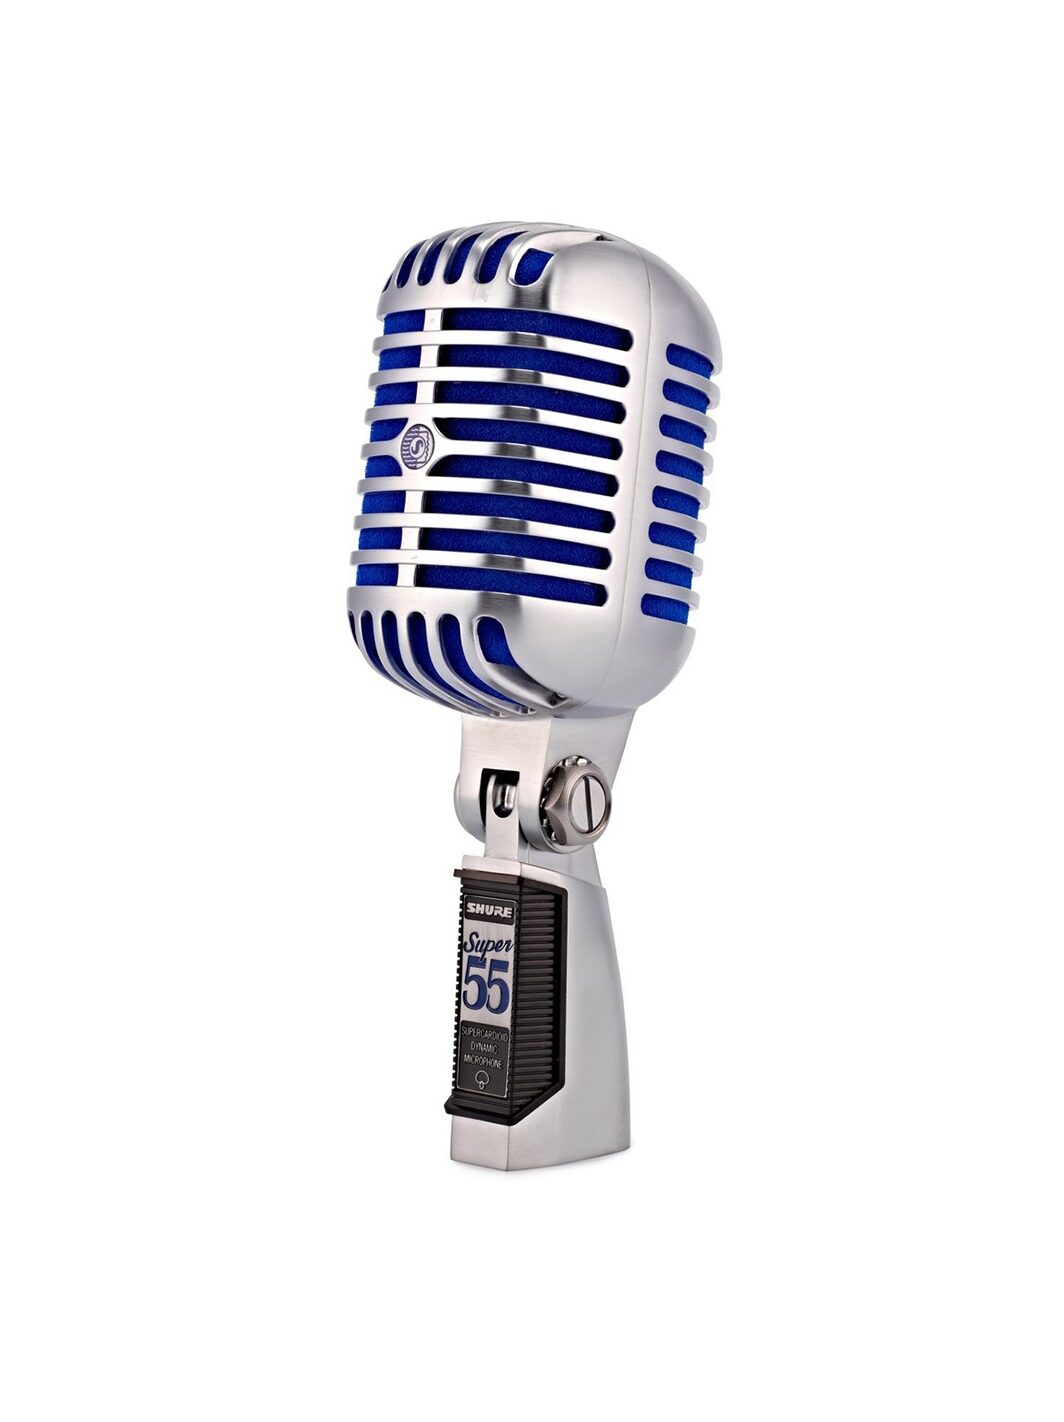 SHURE SUPER 55 DELUXE microfono dinamico